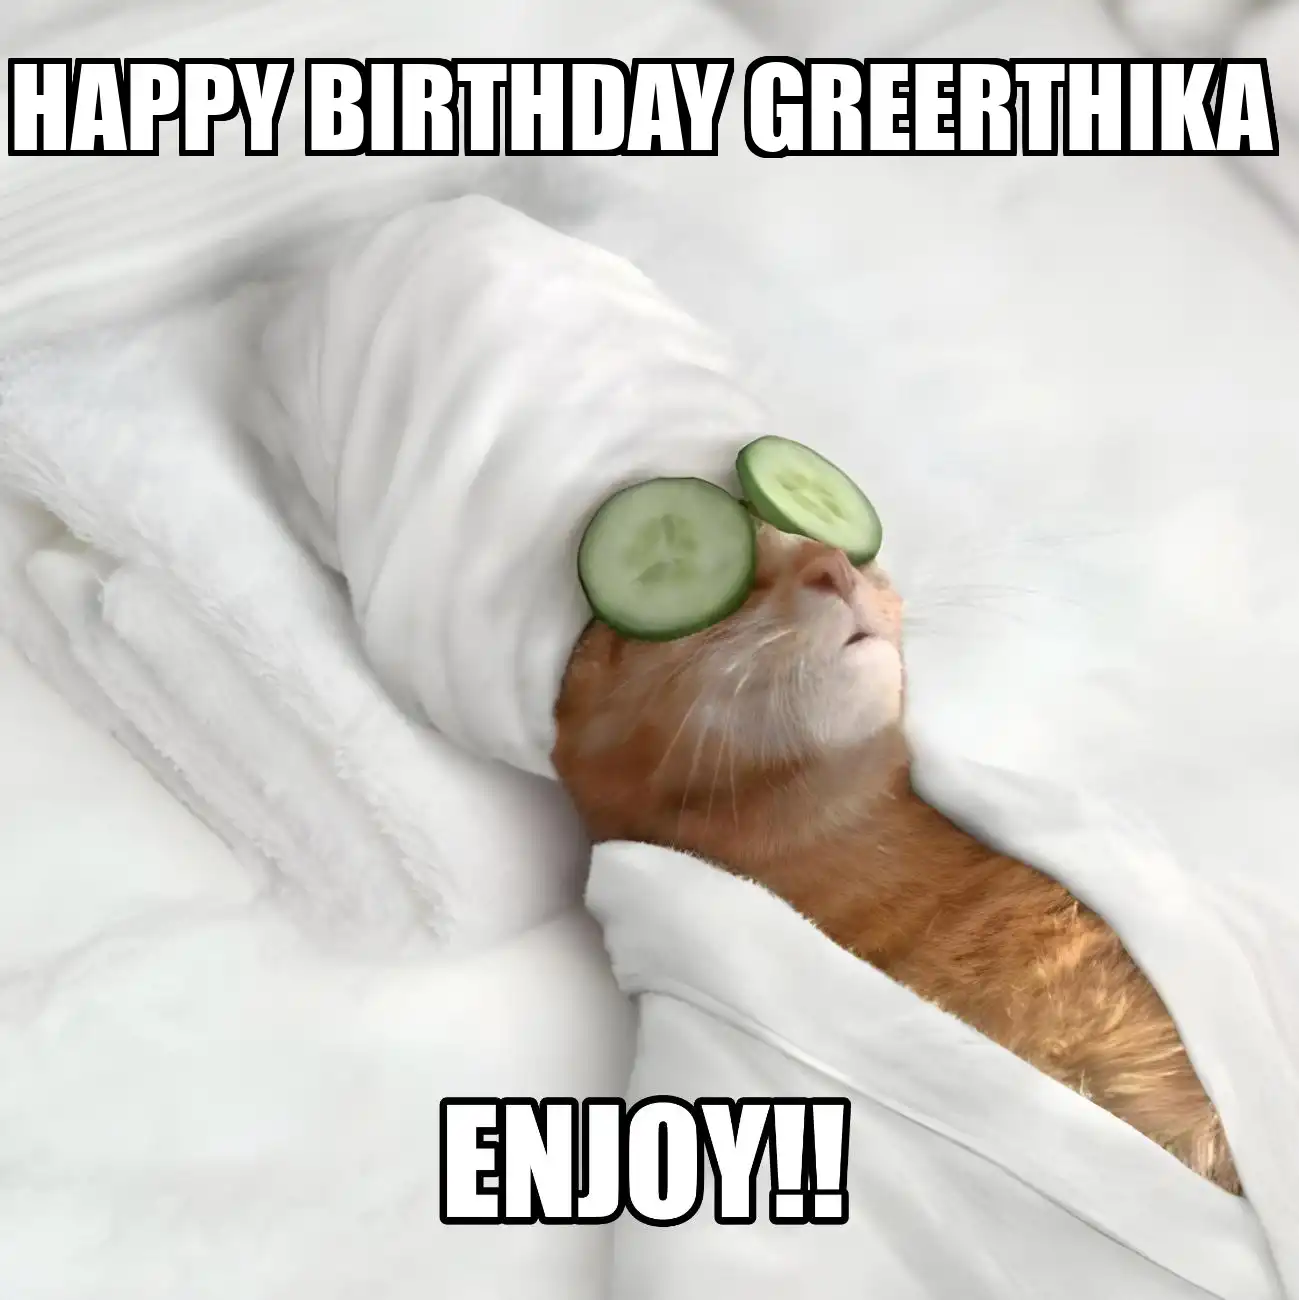 Happy Birthday Greerthika Enjoy Cat Meme